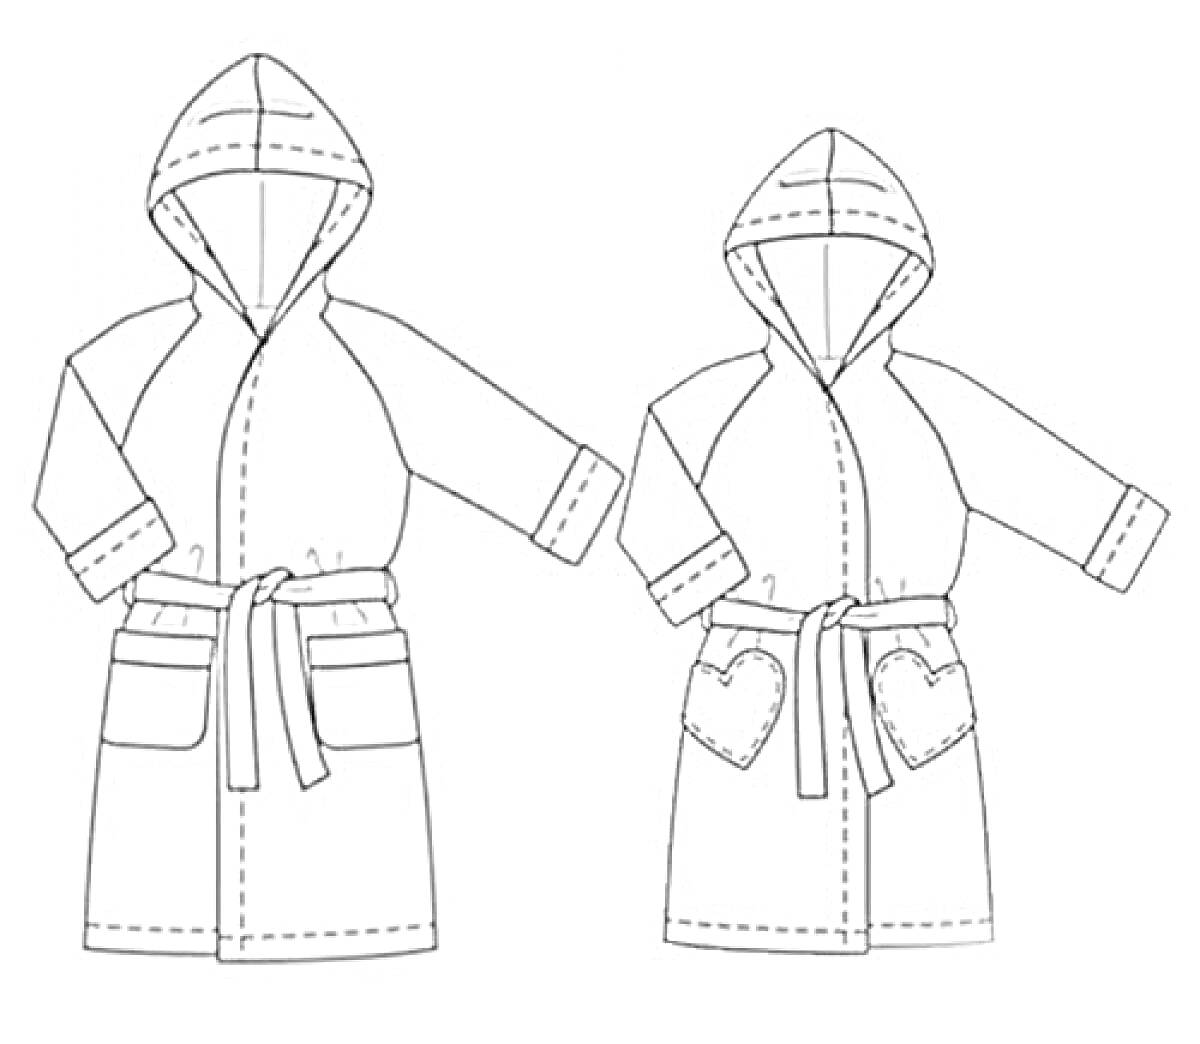 Халаты с капюшоном, поясом и карманами (один халат с обычными карманами, другой халат с карманами в форме сердца)